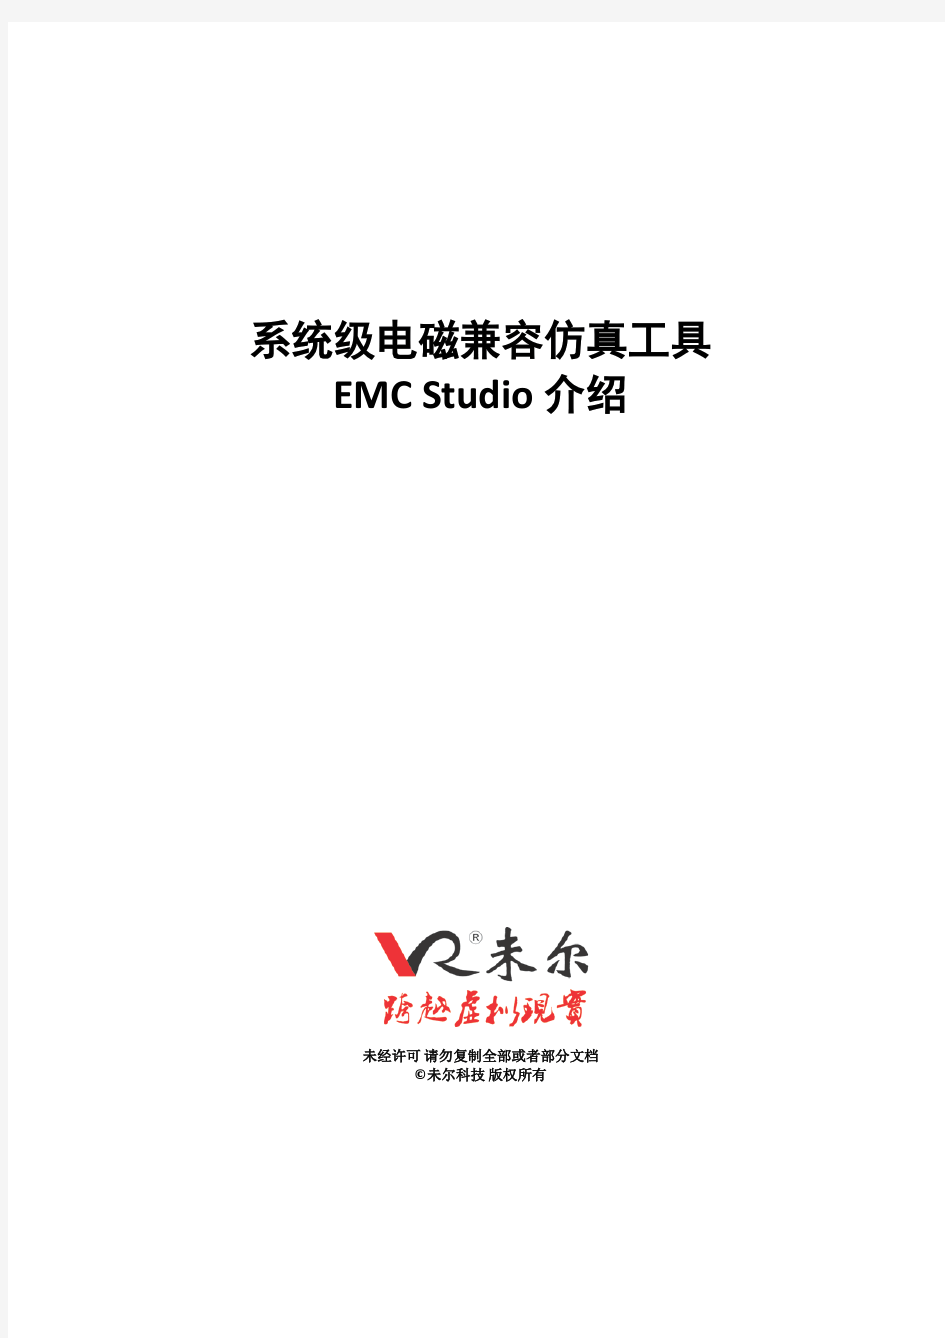 未尔科技_EMC Stidio 产品介绍